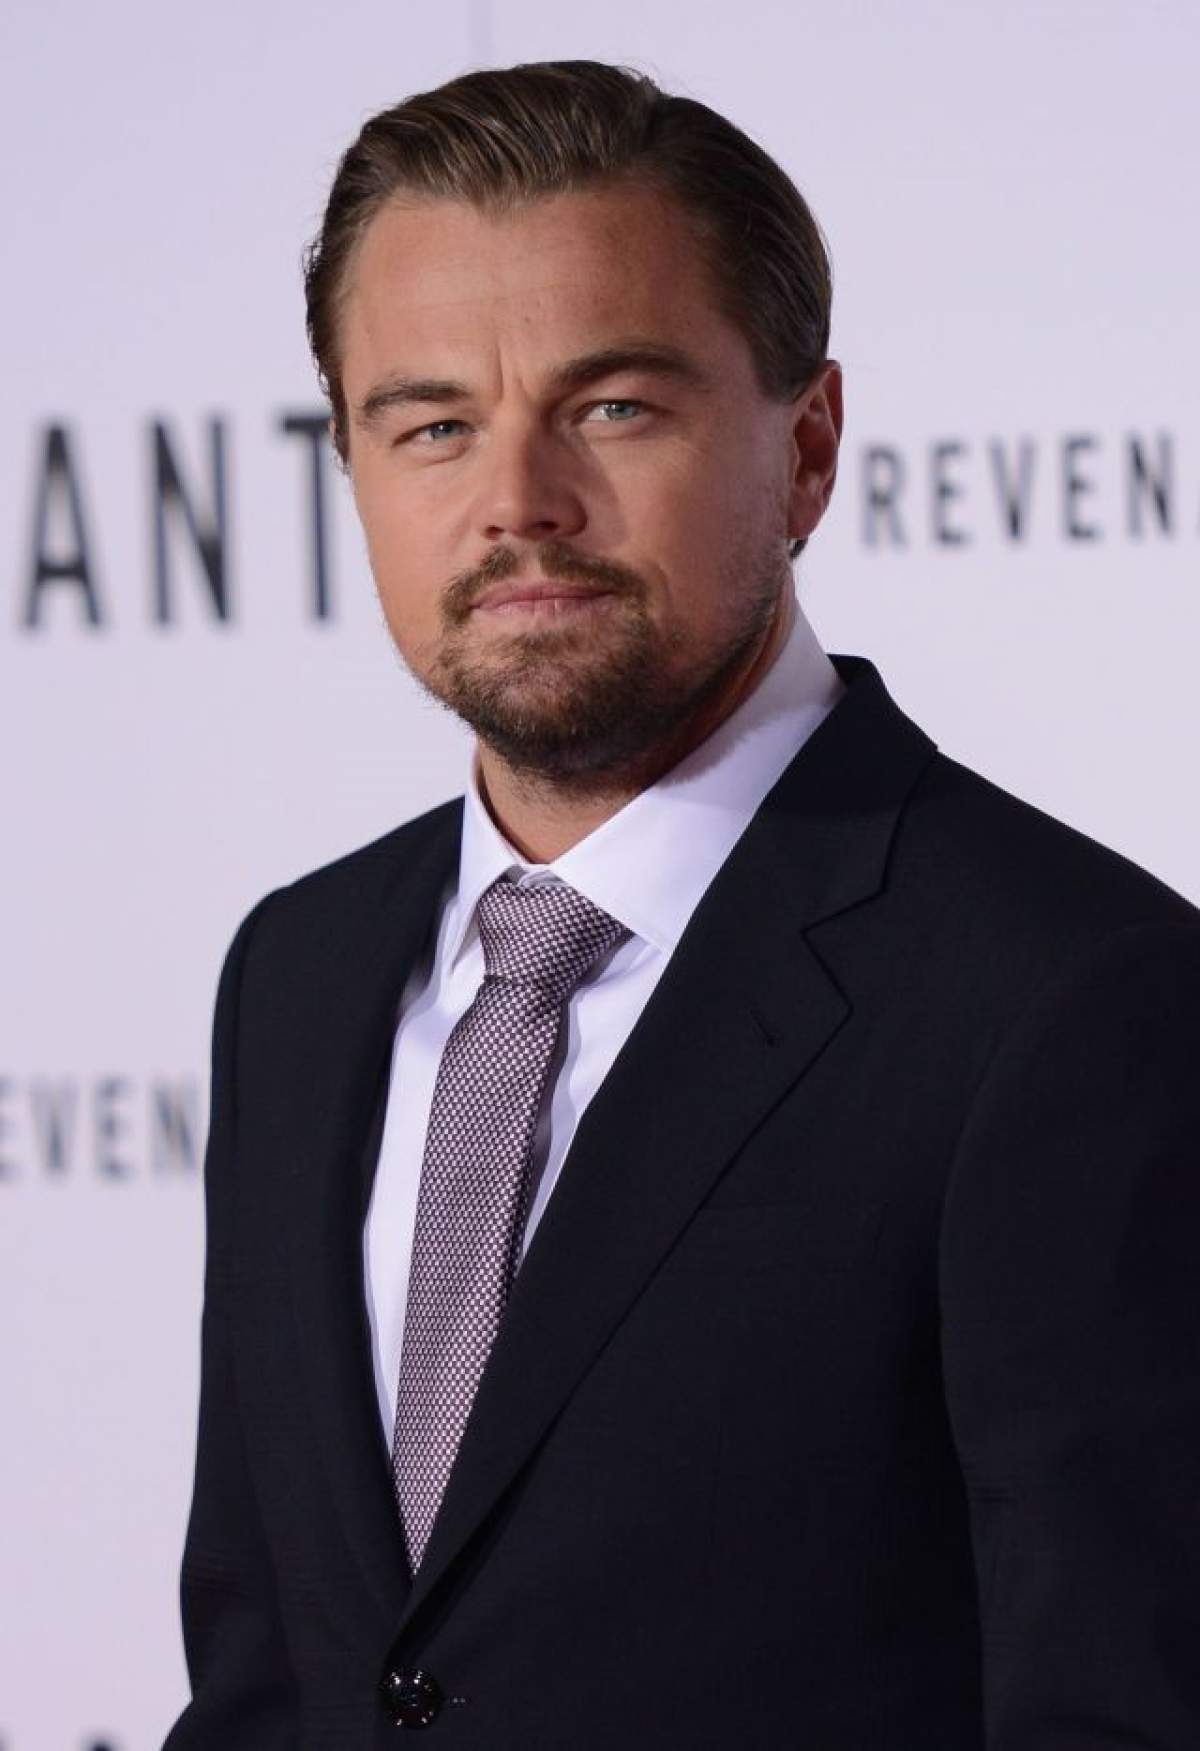 Leonardo DiCaprio nici nu mai știe câte femei i-au trecut prin pat. Burlacul de la Hollywood a luat o decizie șocantă